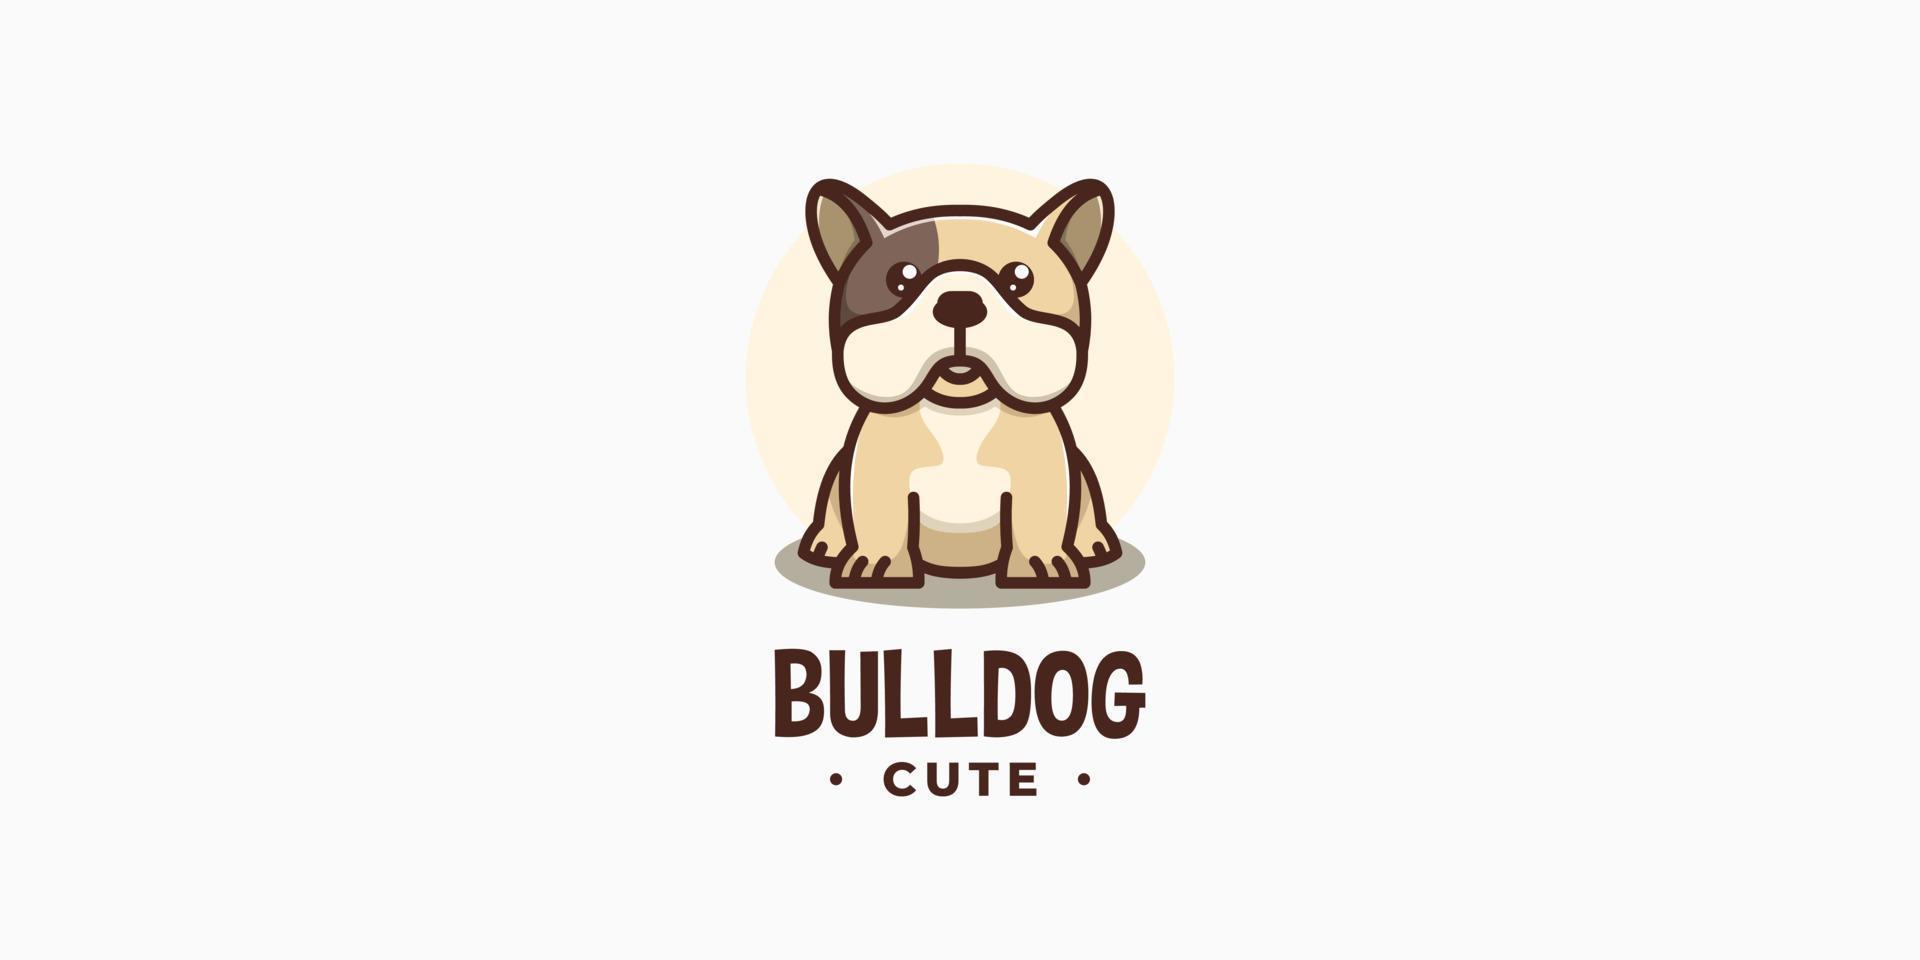 bouledogue mignon dessin animé animal chien animal de compagnie personnage canin mascotte chiot illustration vecteur création de logo